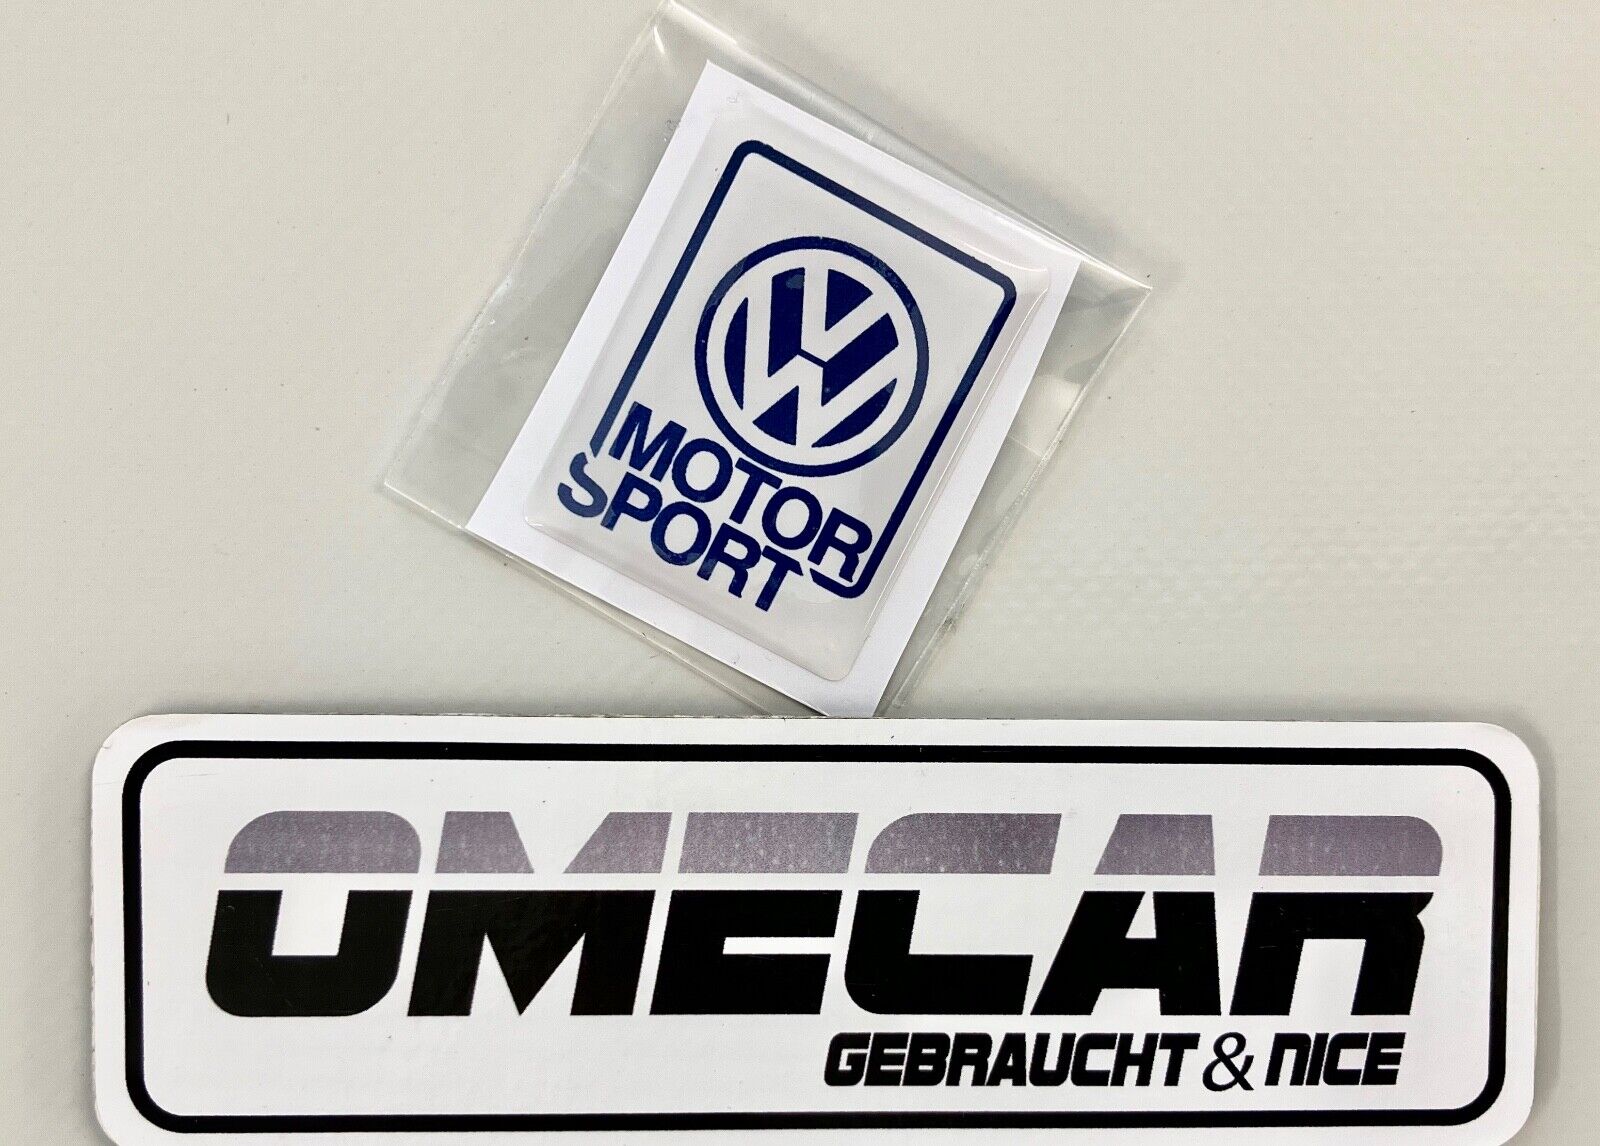 Aufkleber VW Motorsport passend für den VW Polo Golf Jetta Corrado Scirocco  - Ersatzteile in Originalqualität für alle VW Golf 2 Modelle Typ 19E / MK2  - Lager von Neuteilen und Gebrauchtteilen